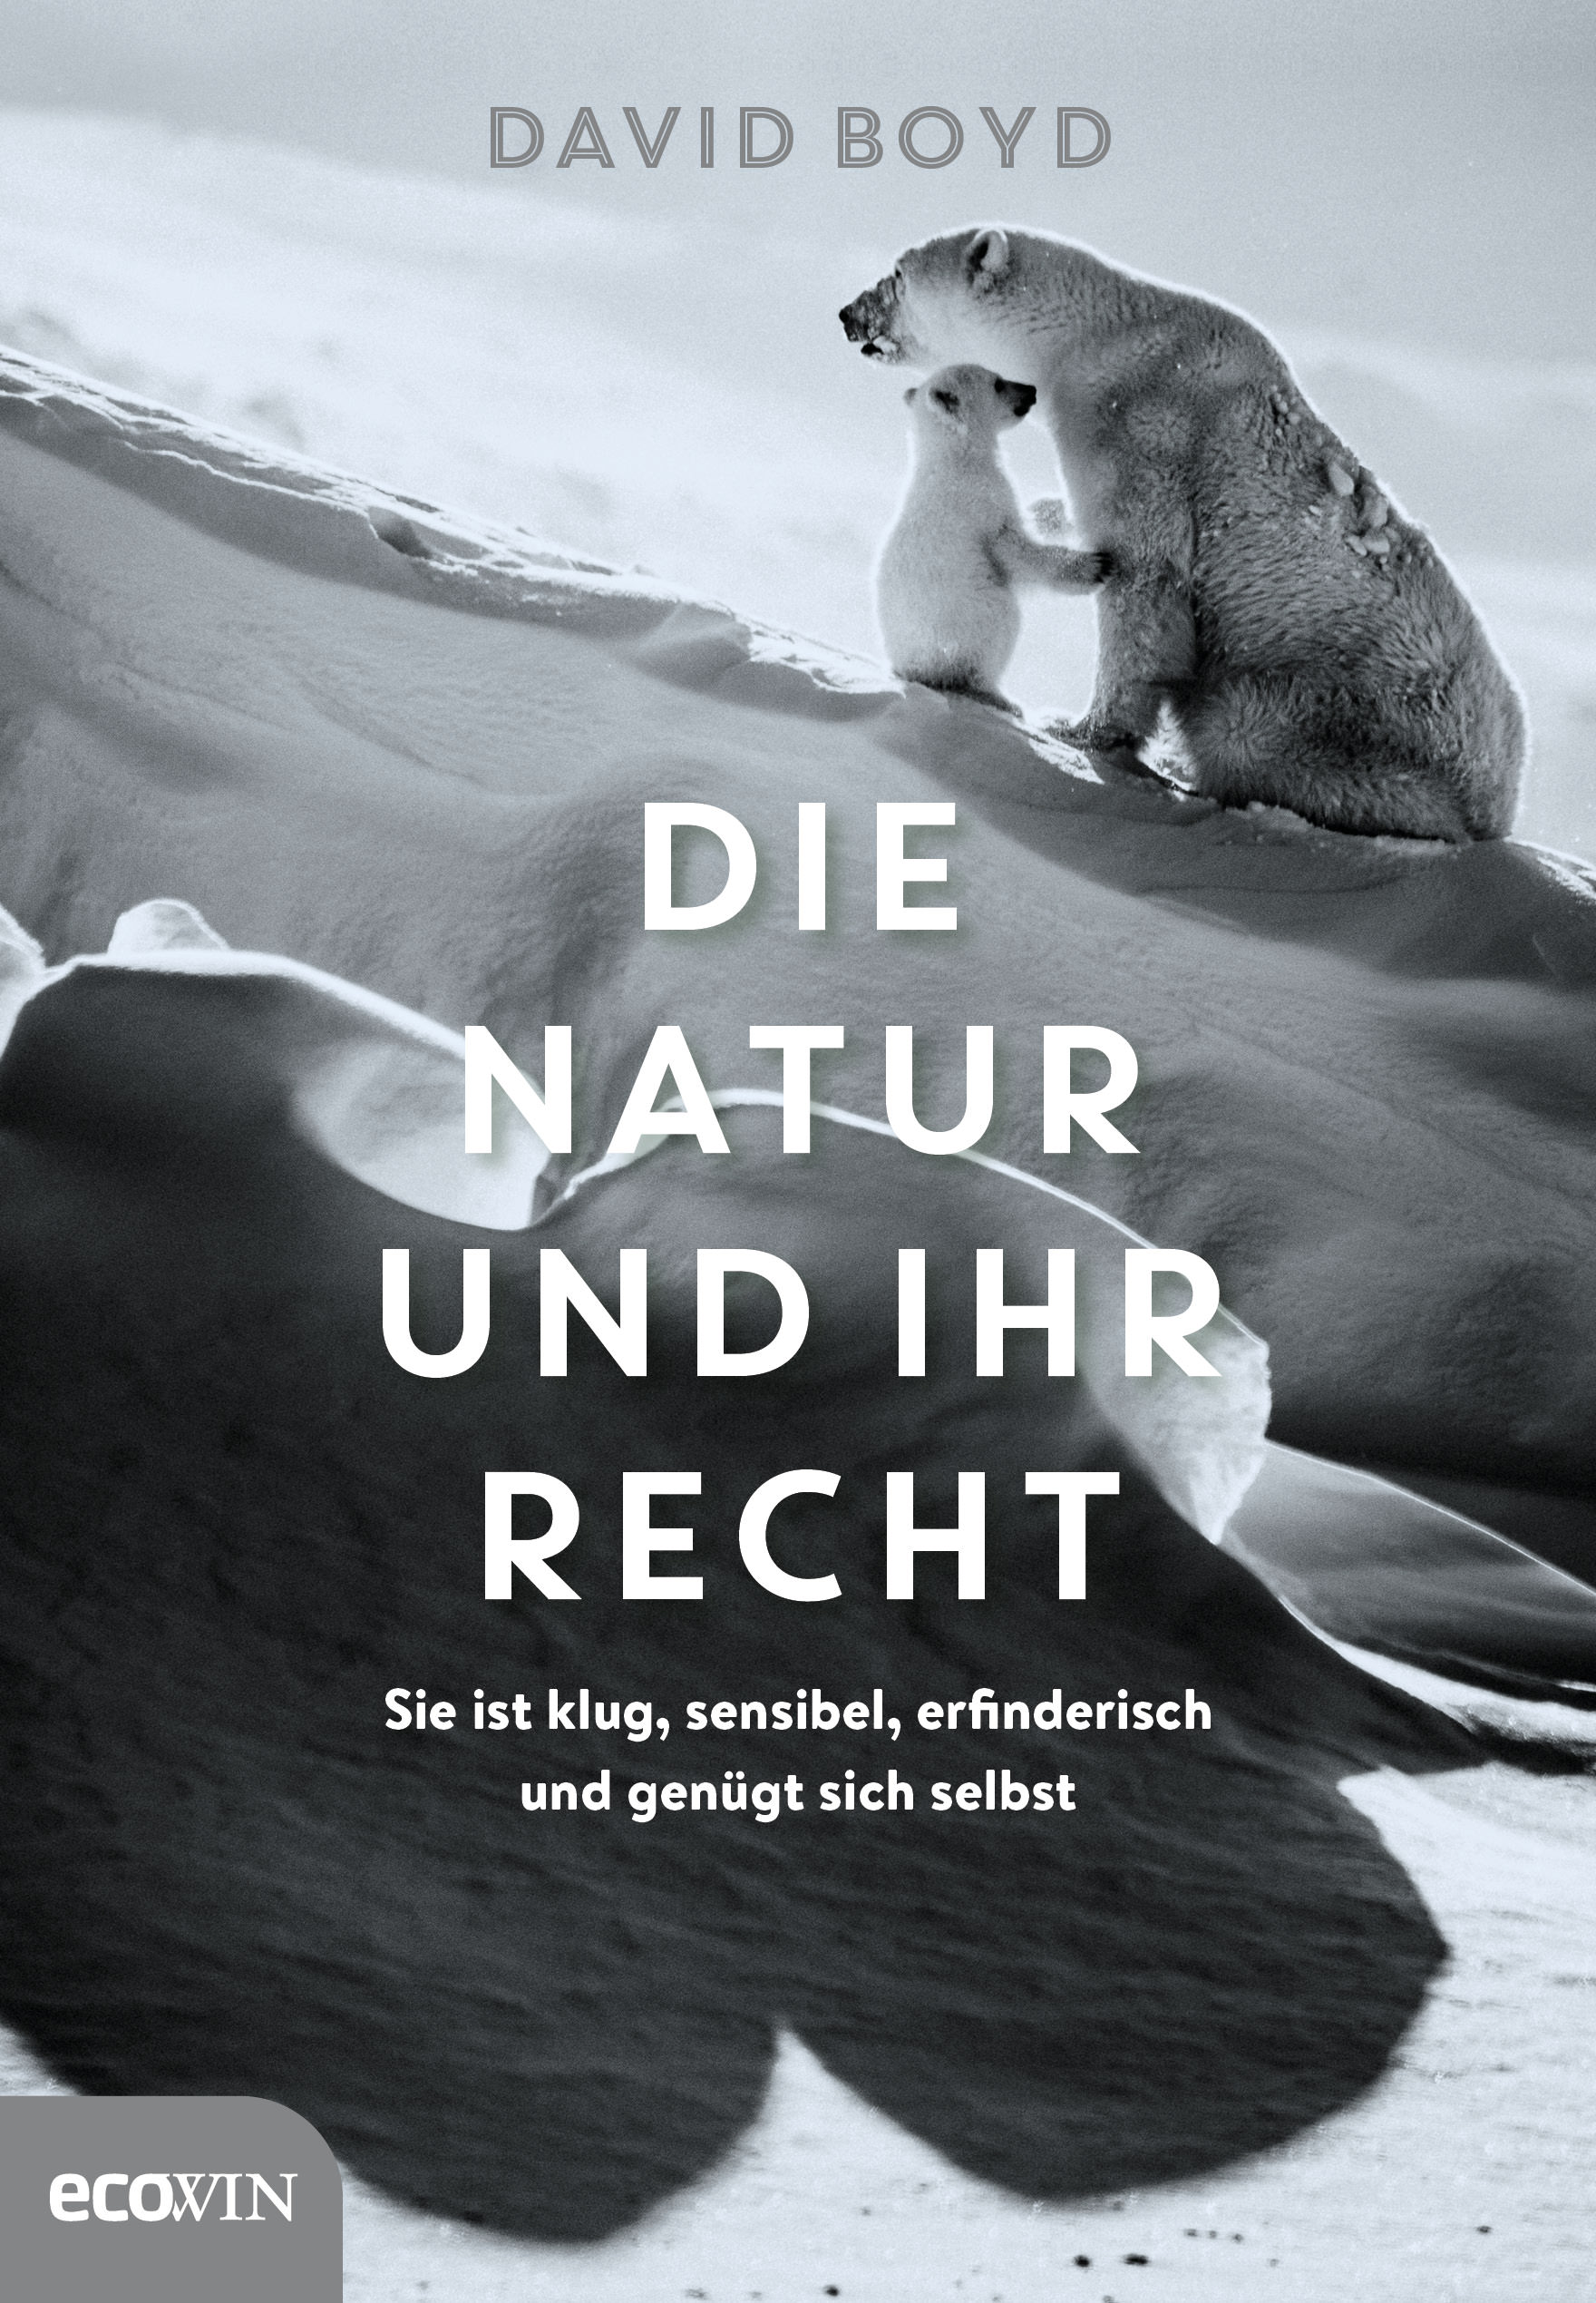 Buchcover: David Boyd: Die Natur und ihr Recht. Ecowin Verlag